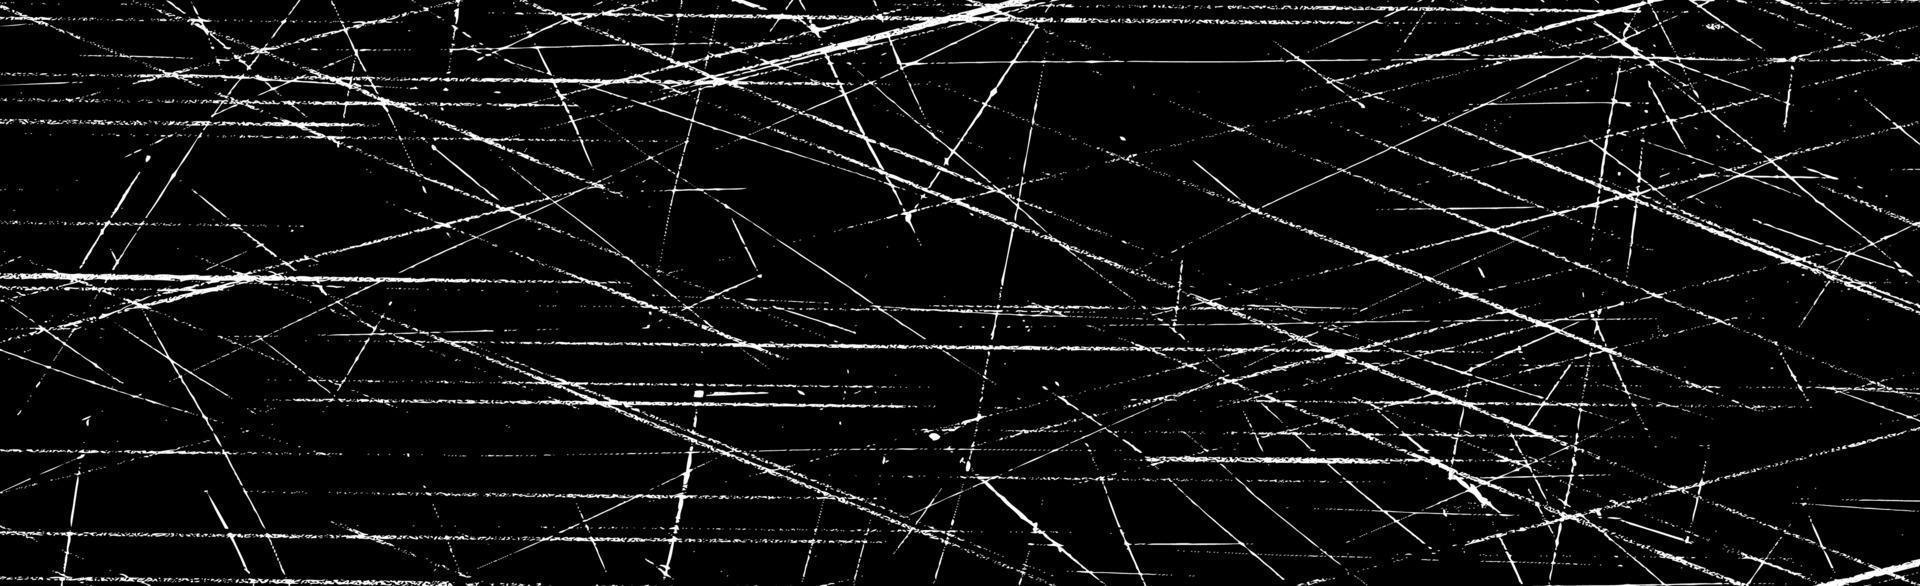 Grunge weiße Linien und Punkte auf einem schwarzen Hintergrund - Vektorillustration vektor